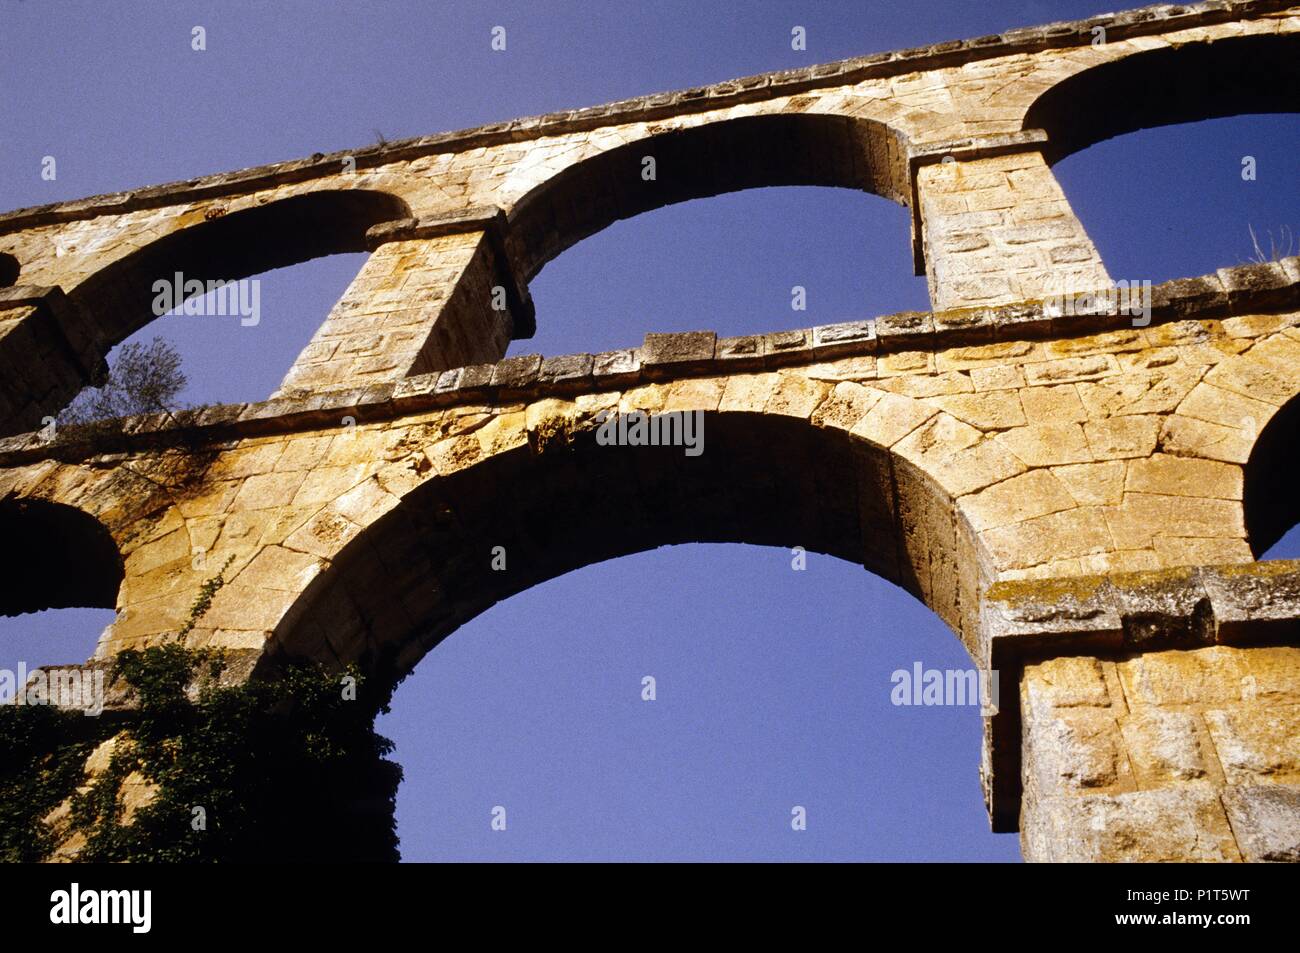 Acueducto del 'Diablo' / 'Devils' acueduct (roman architecture). Stock Photo